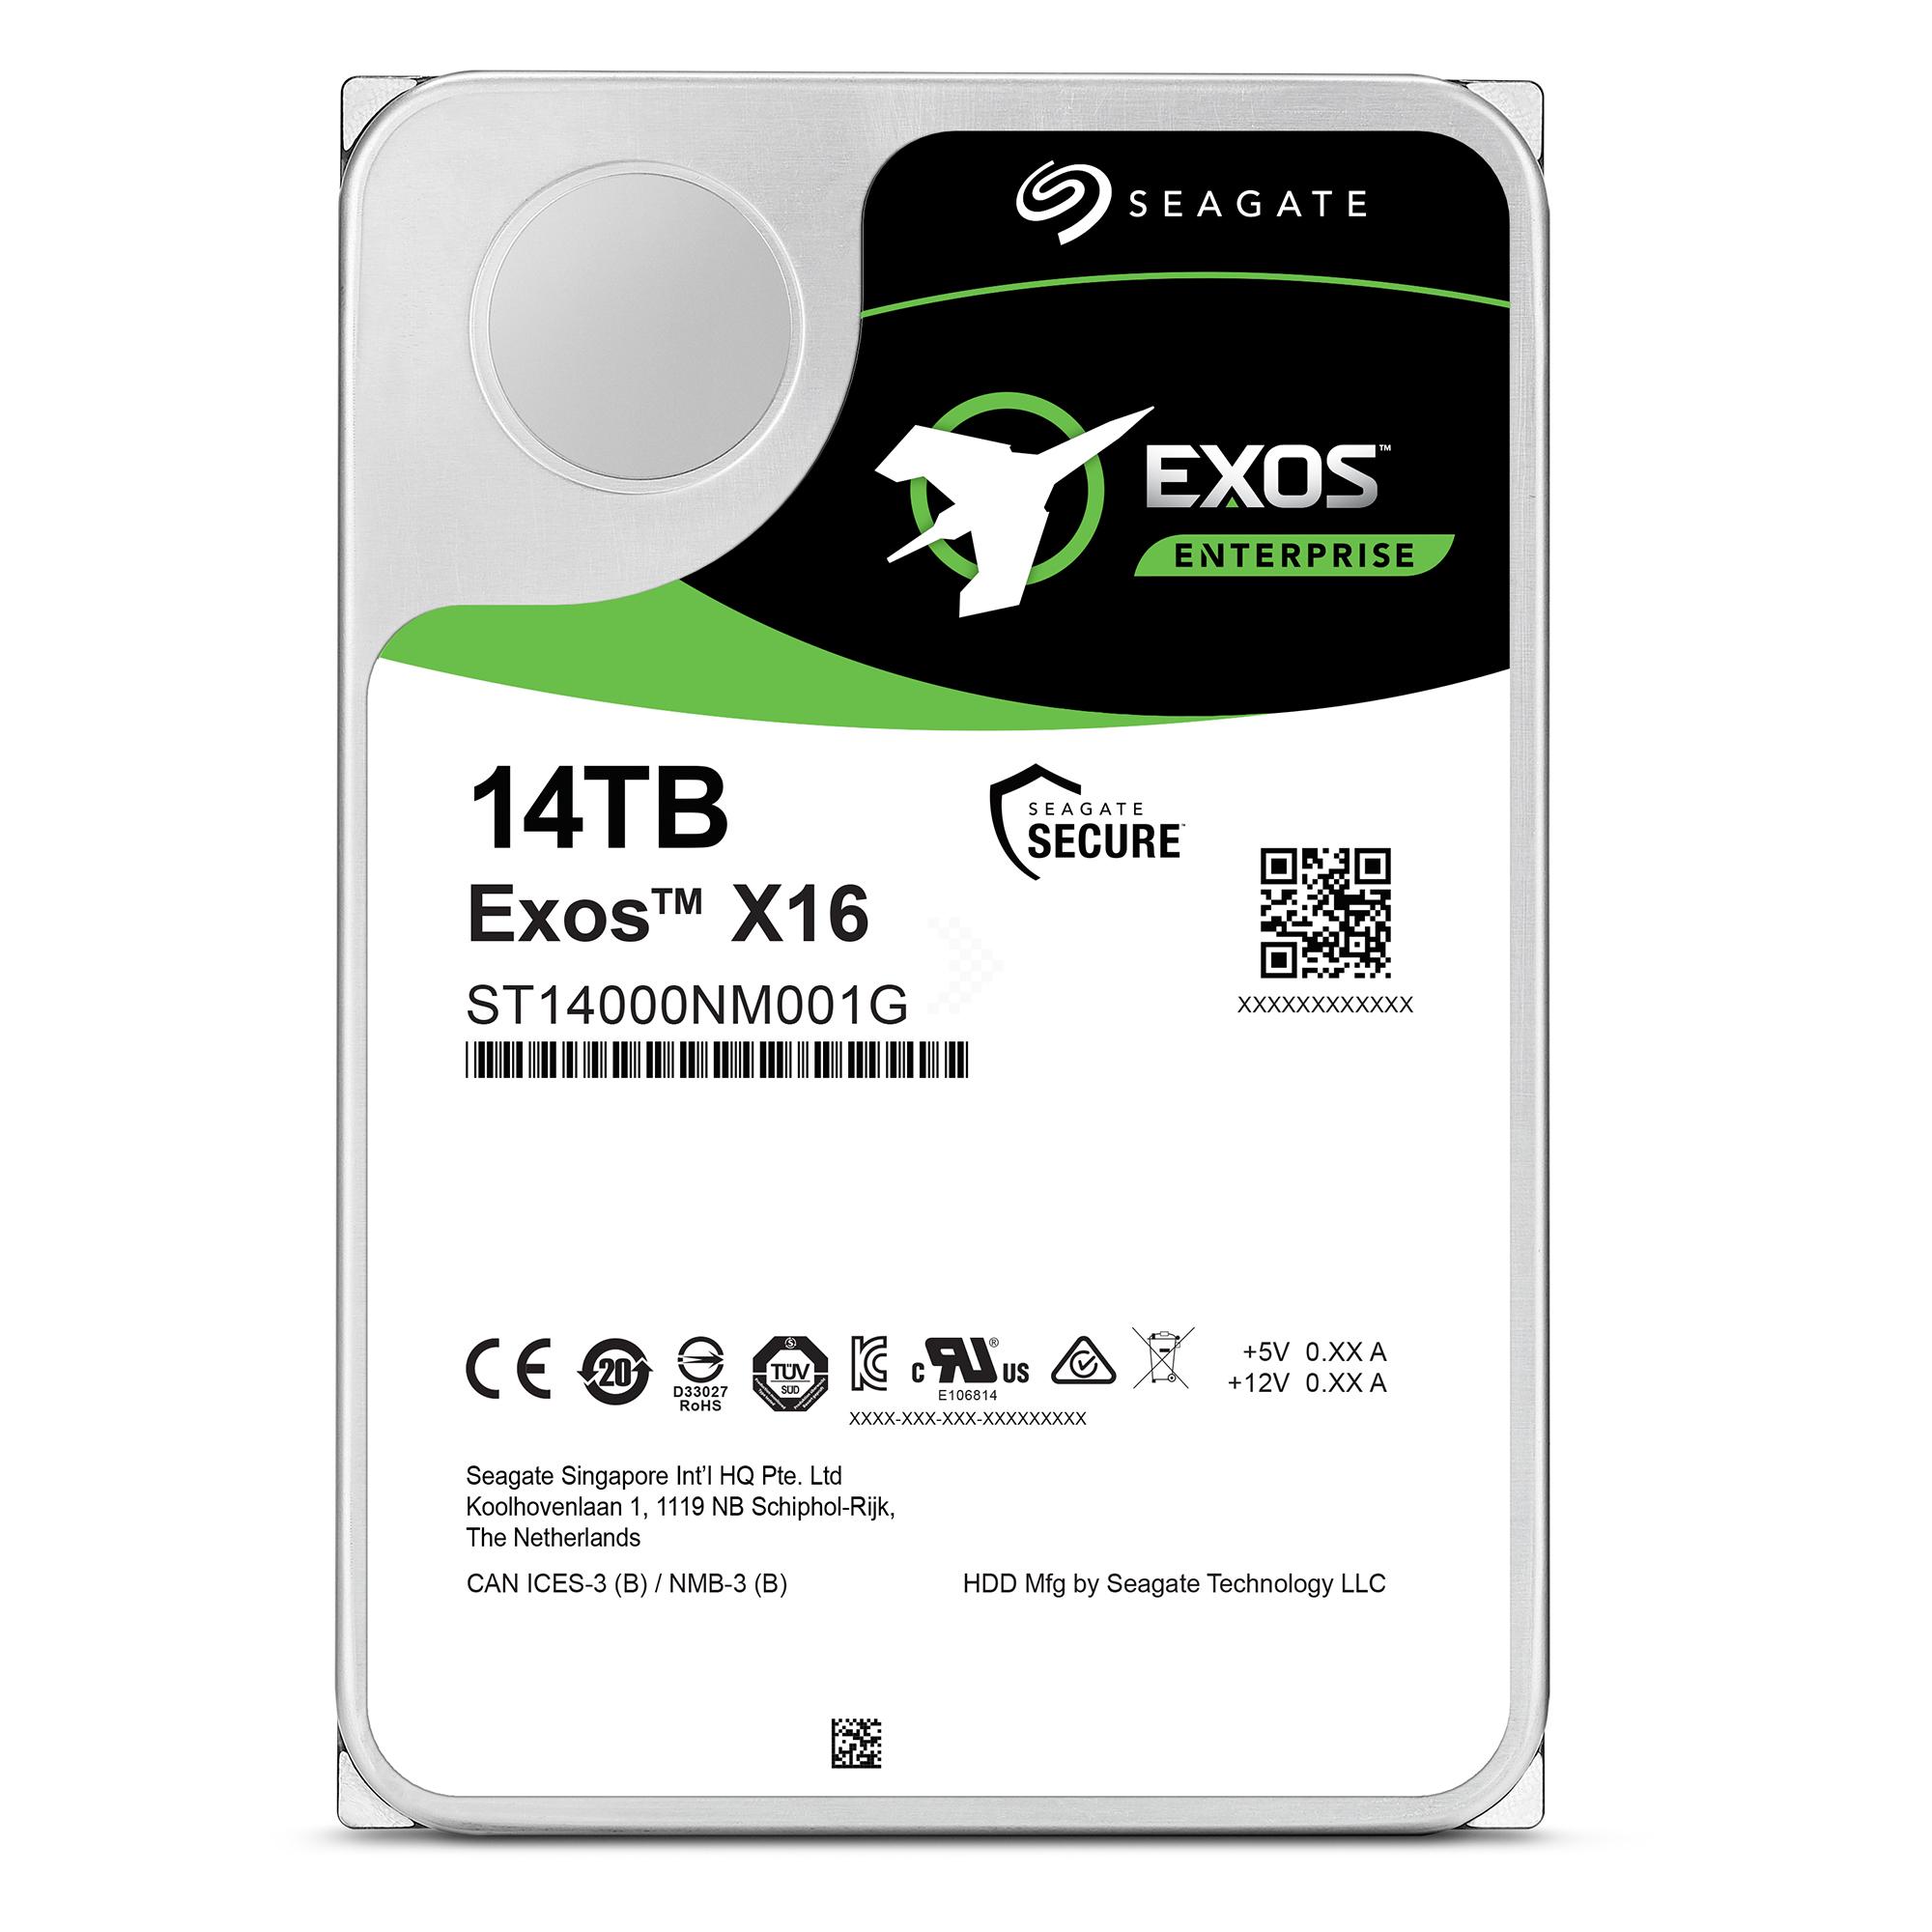 HDD Seagate Exos X16 14TB ST14000NM001G Enterprise 3.5 inch SATA III 256MB Cache 7200RPM